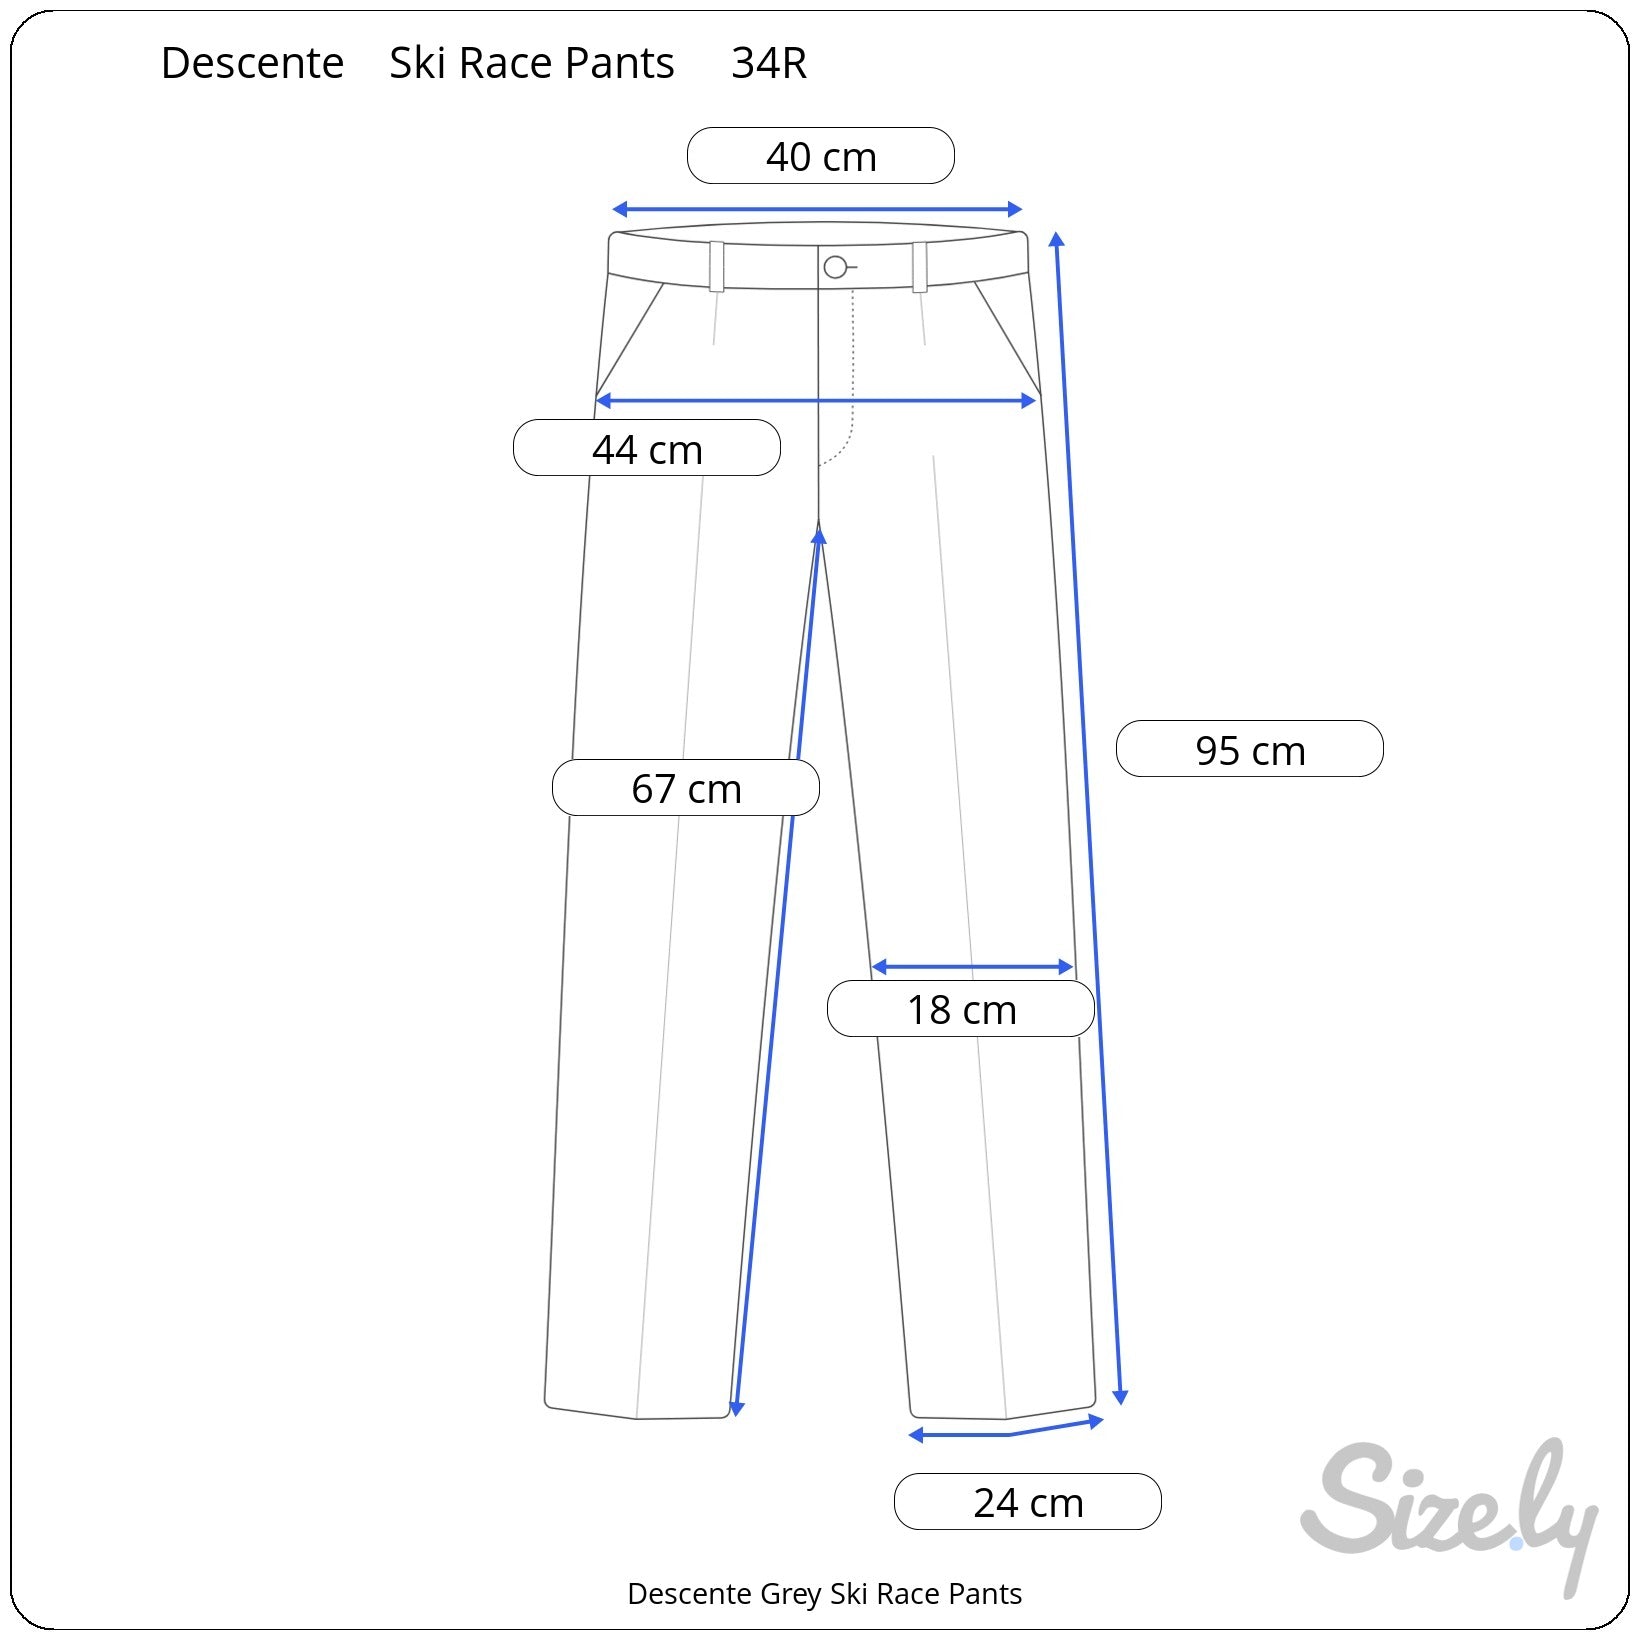 Descente Grey Ski Race Pants, measurements